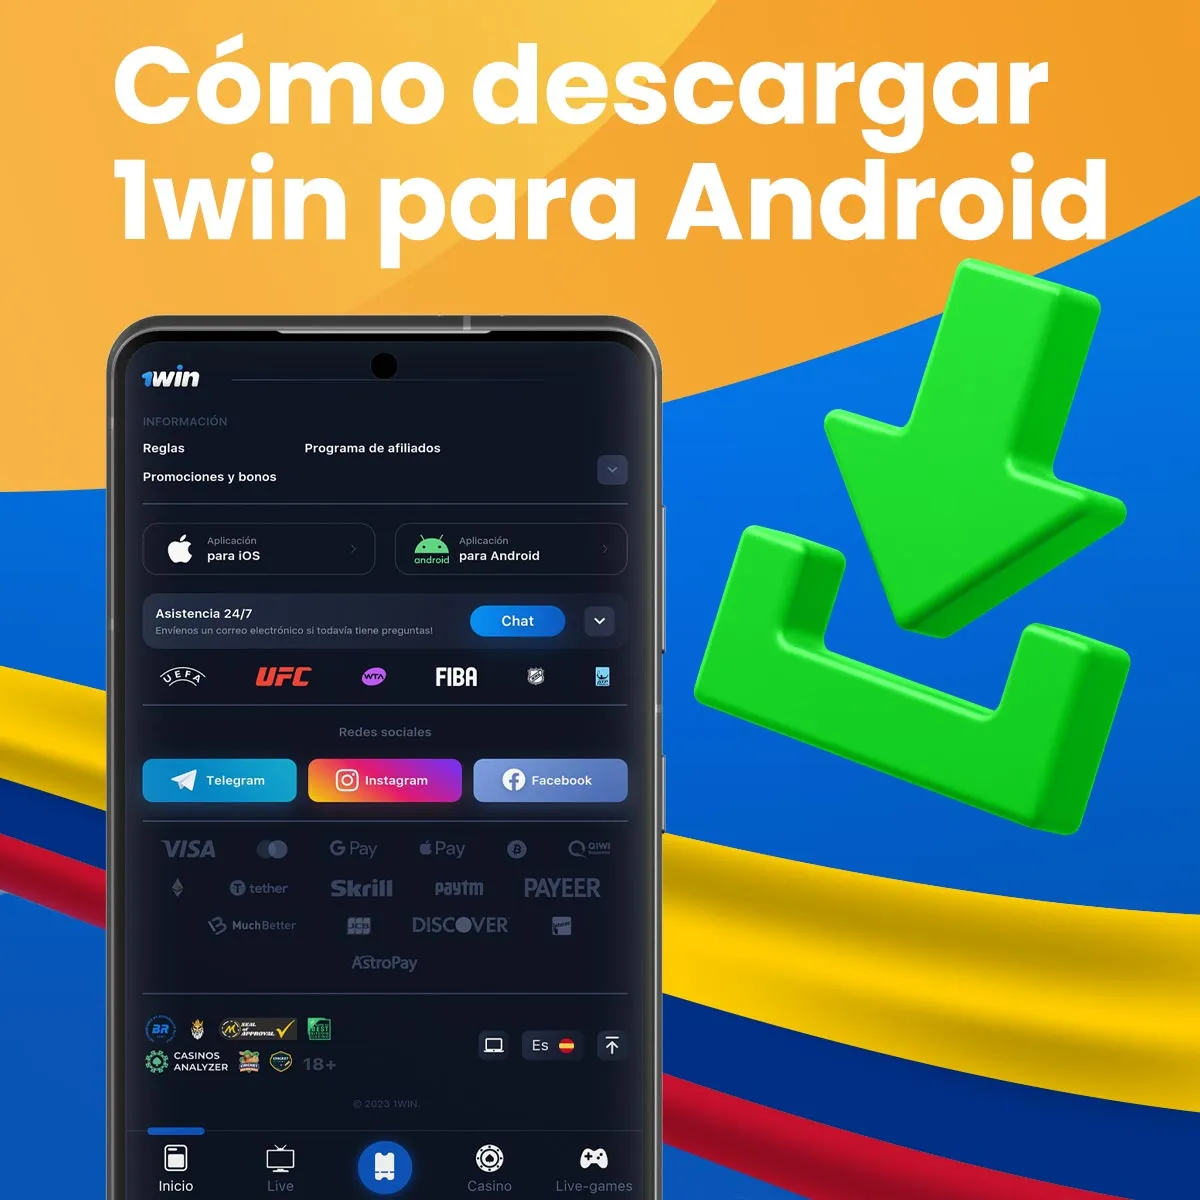 Instrucciones paso a paso para instalar la app móvil de 1win en android